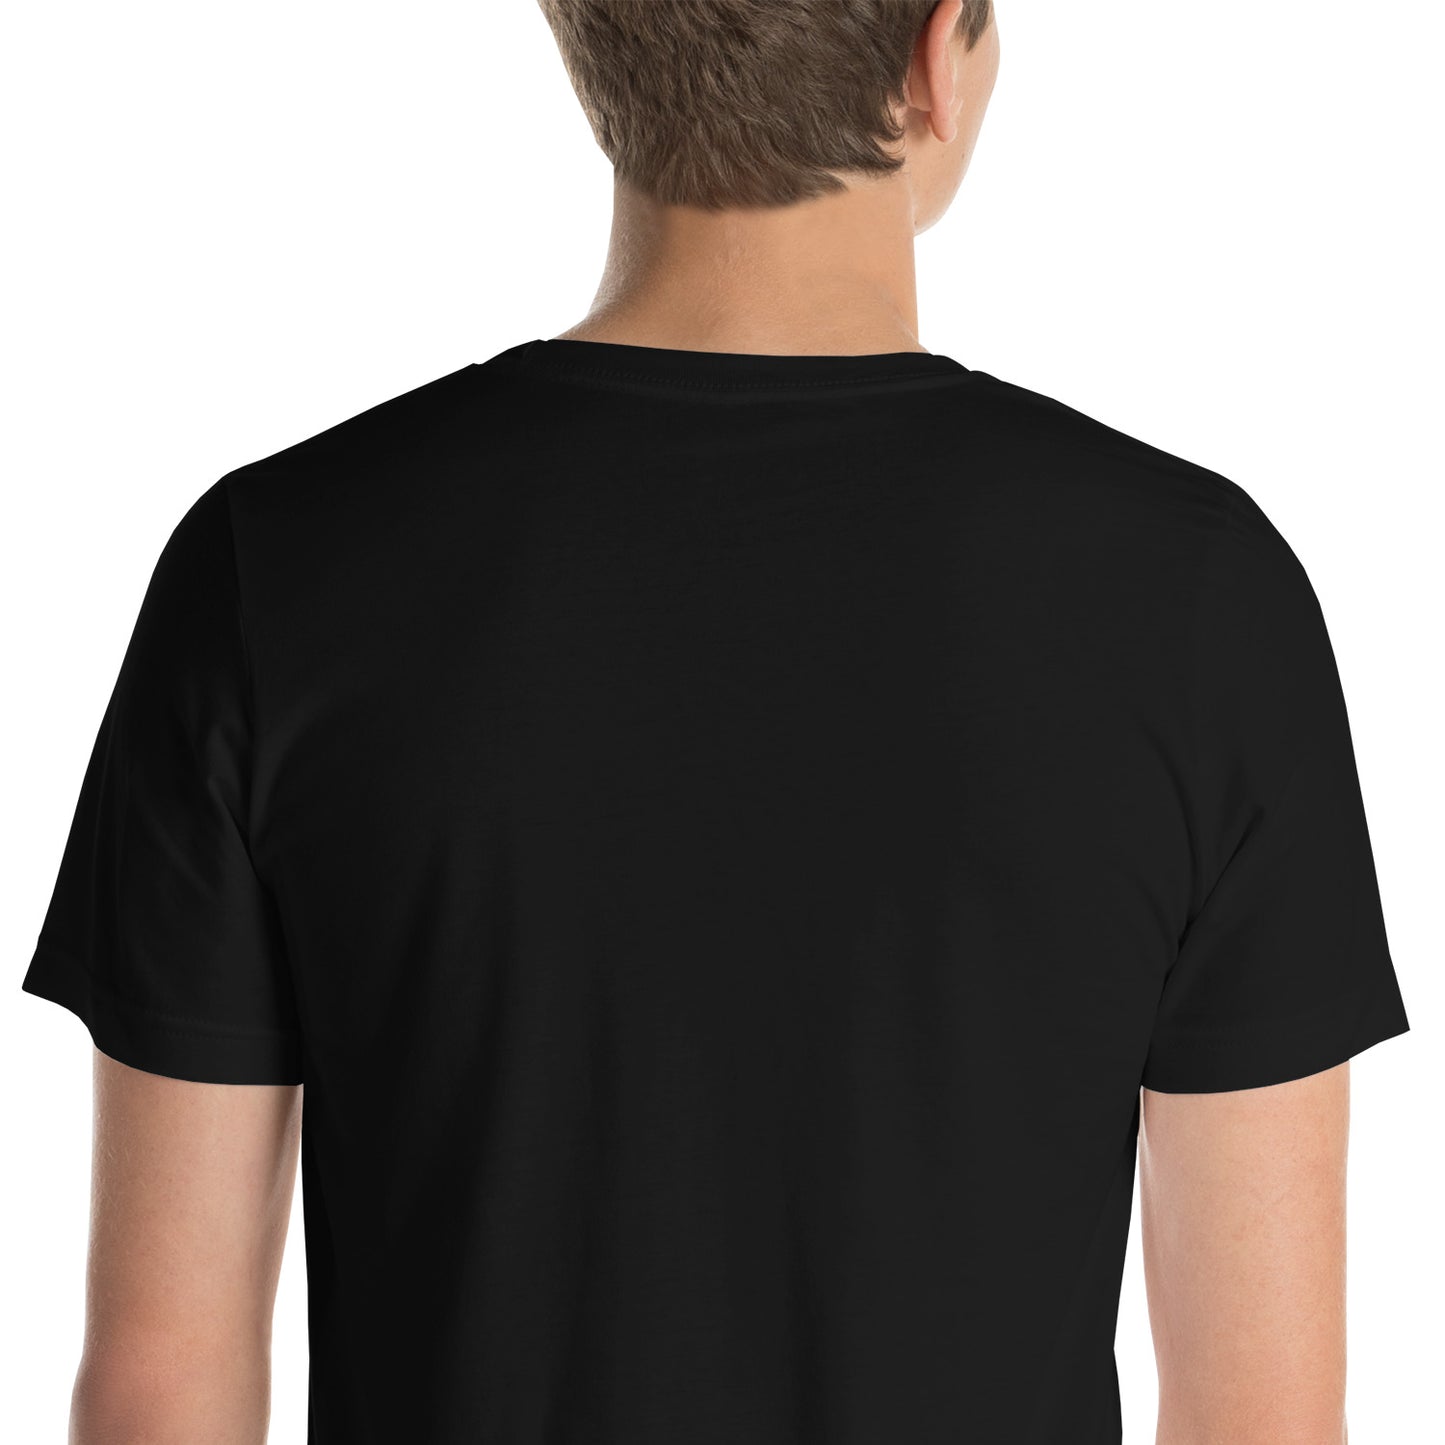 Unisex t-shirt - LUCAS CASH